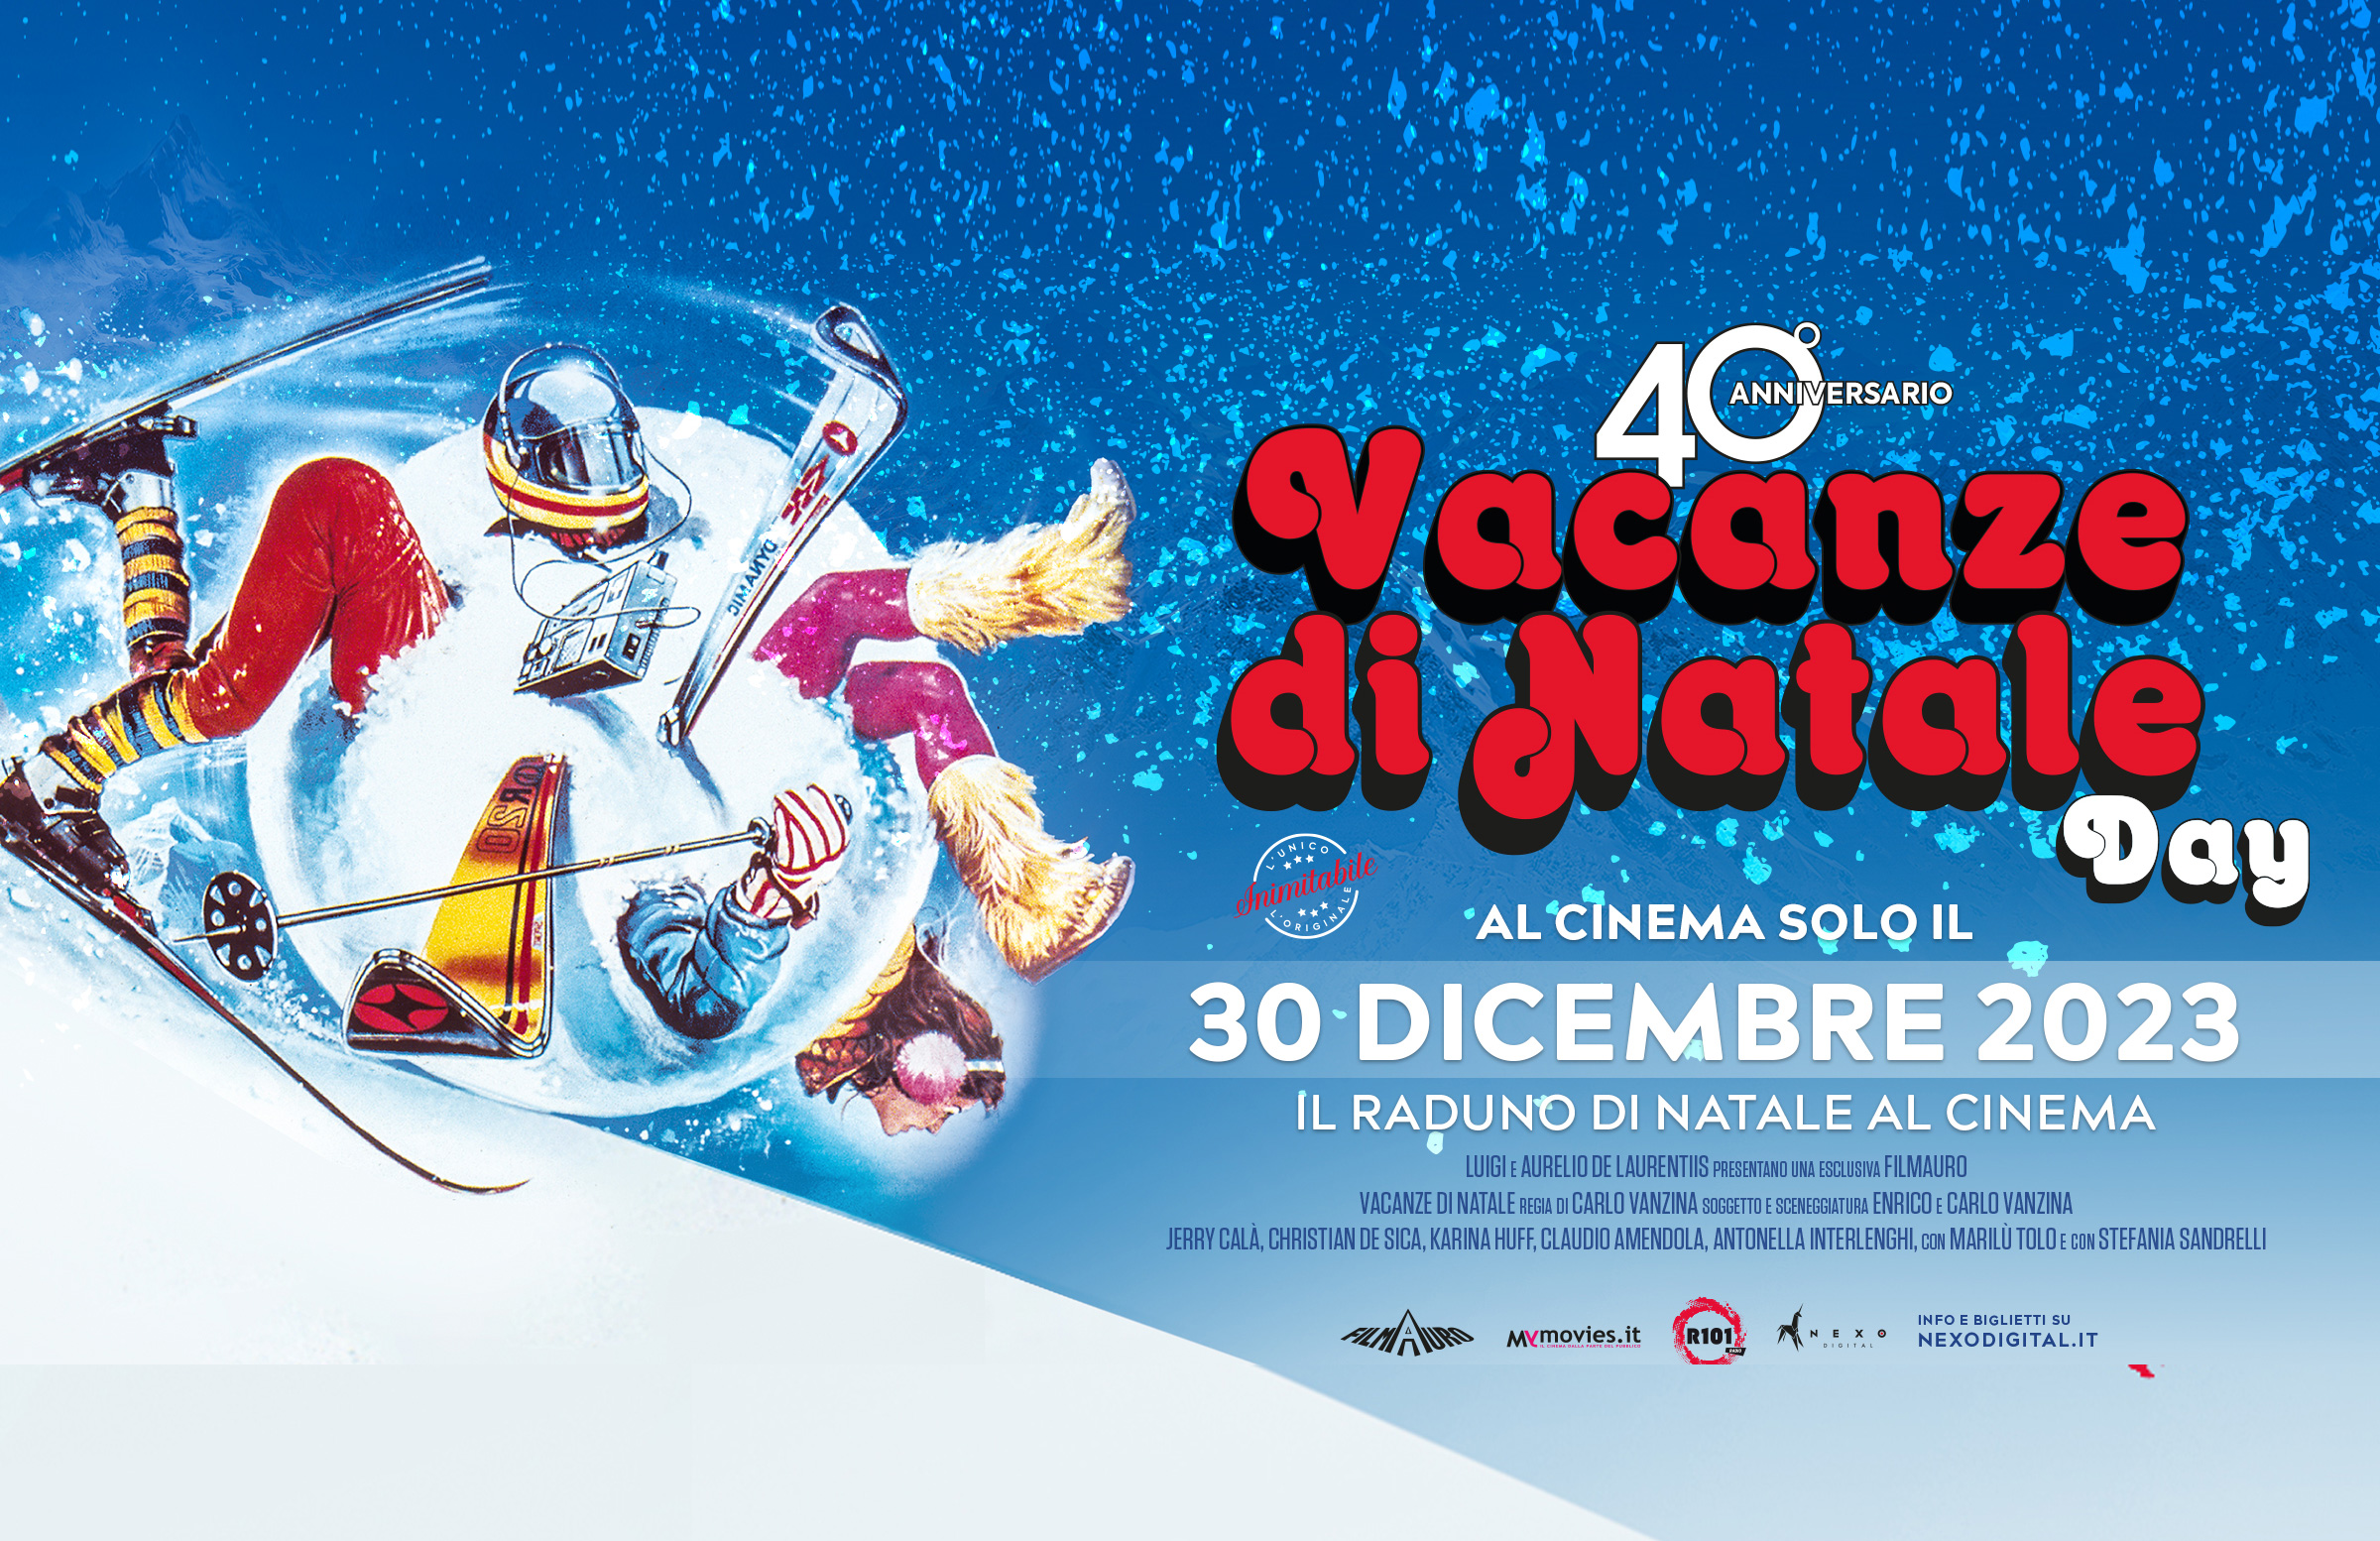 A 40 anni dall’uscita “Vacanze di Natale” di Carlo Vanzina torna al cinema solo per un giorno